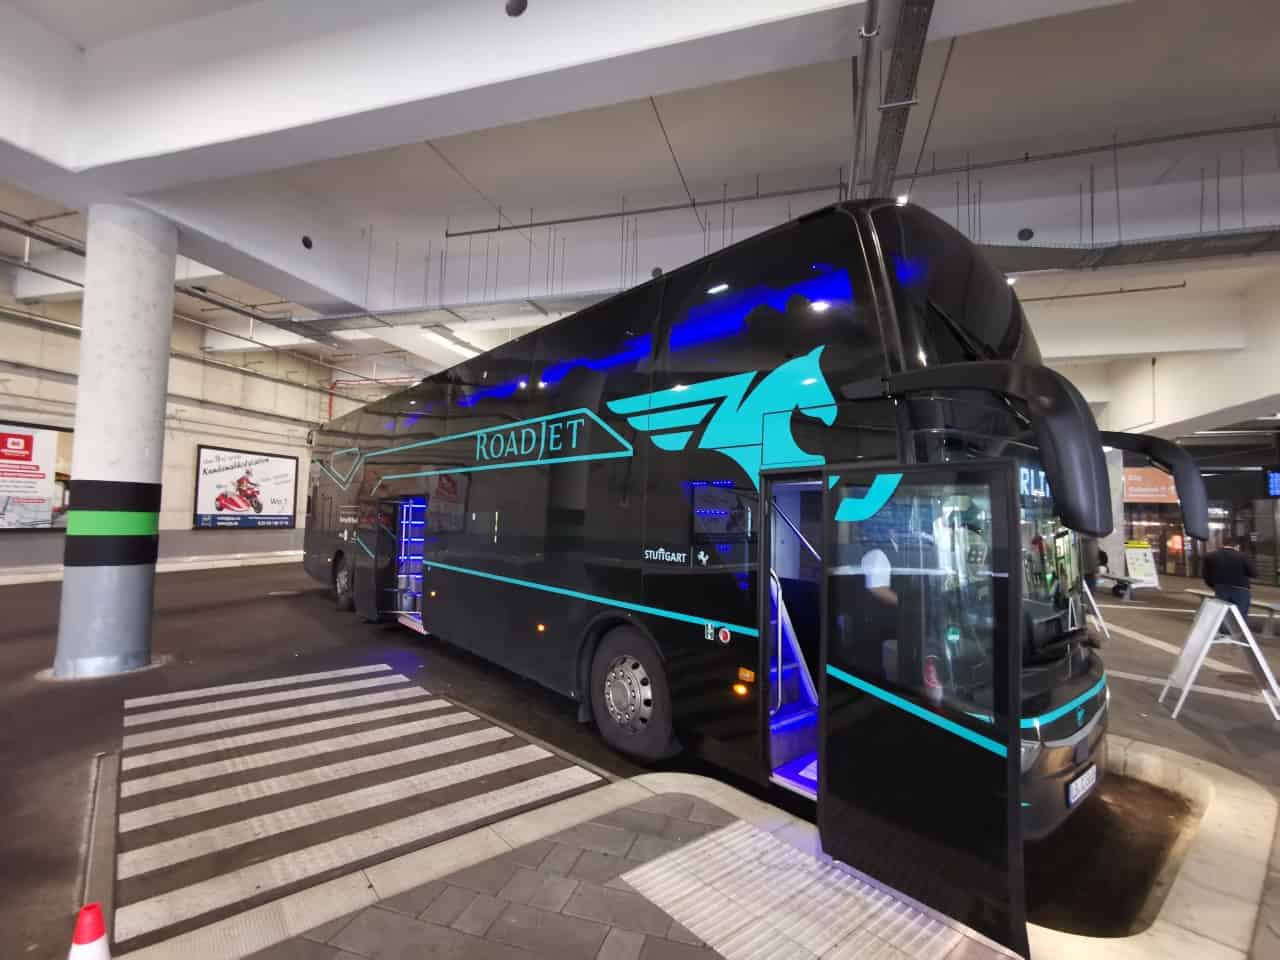 Roadjet SO ist die Fahrt im neuen LuxusFernbus